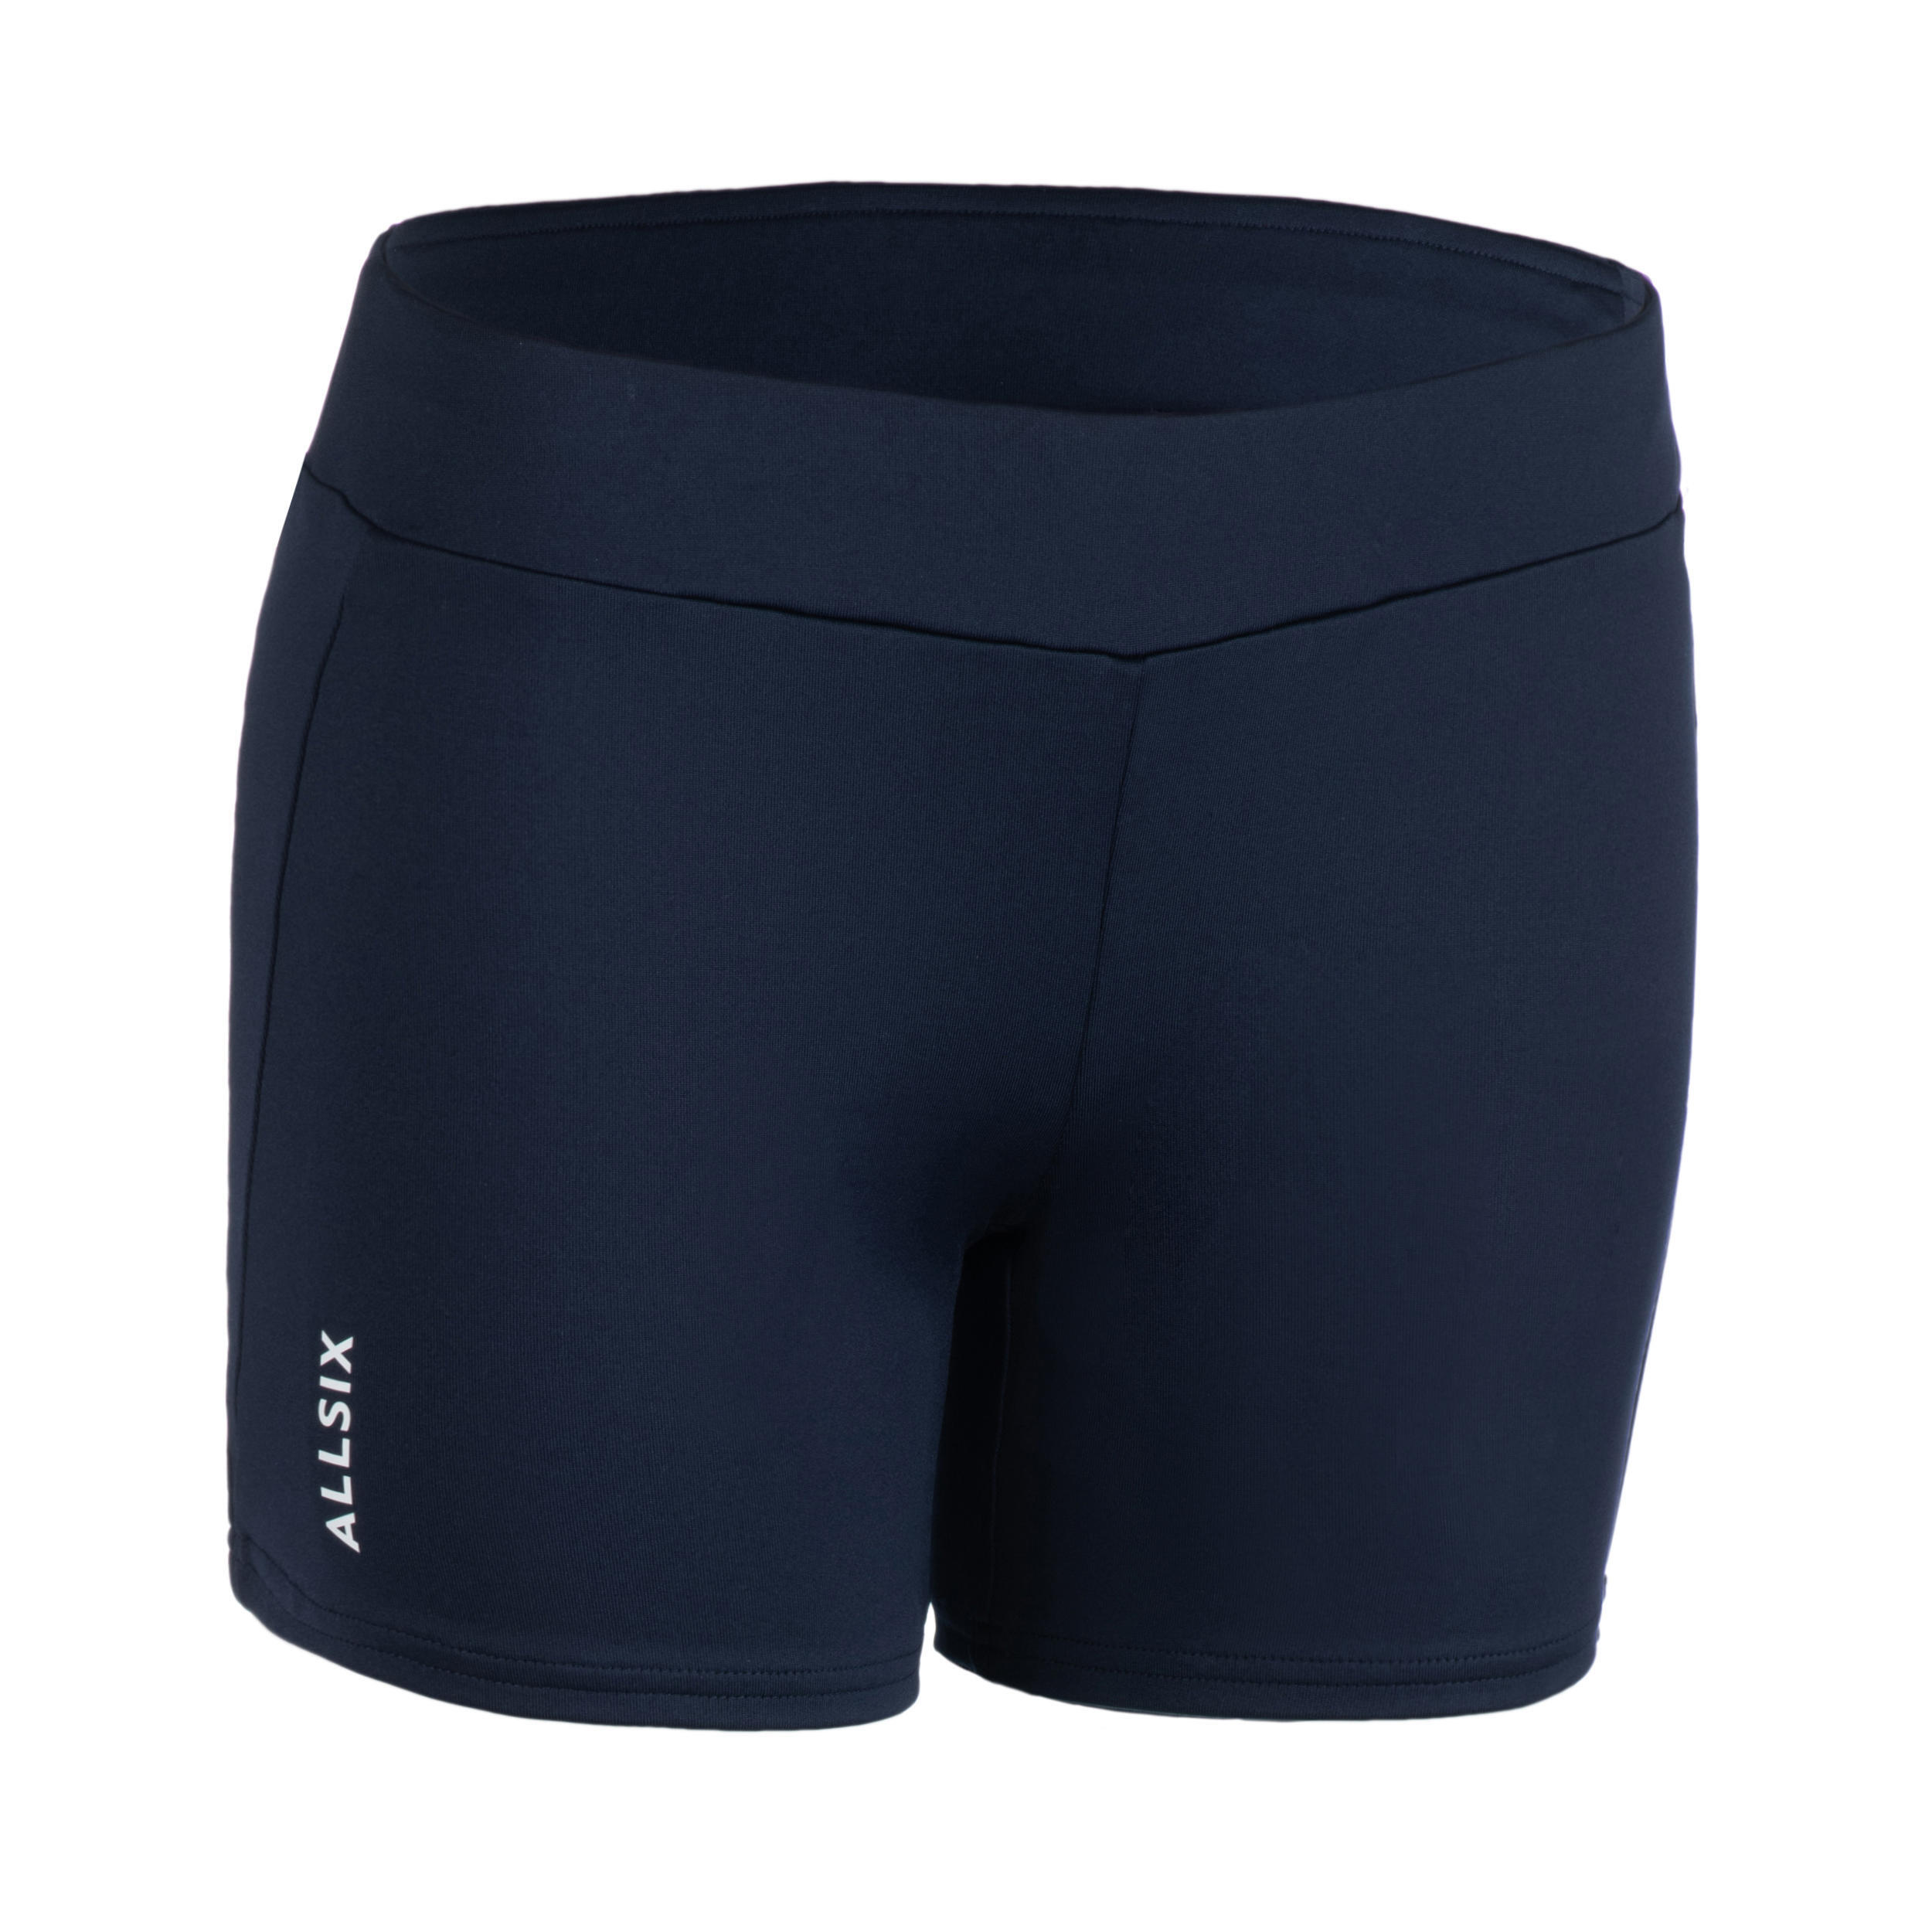 Волейбольные шорты женские ВШ500 темно-синие ALLSIX, черный синий волейбольные шорты decathlon v100 allsix черный